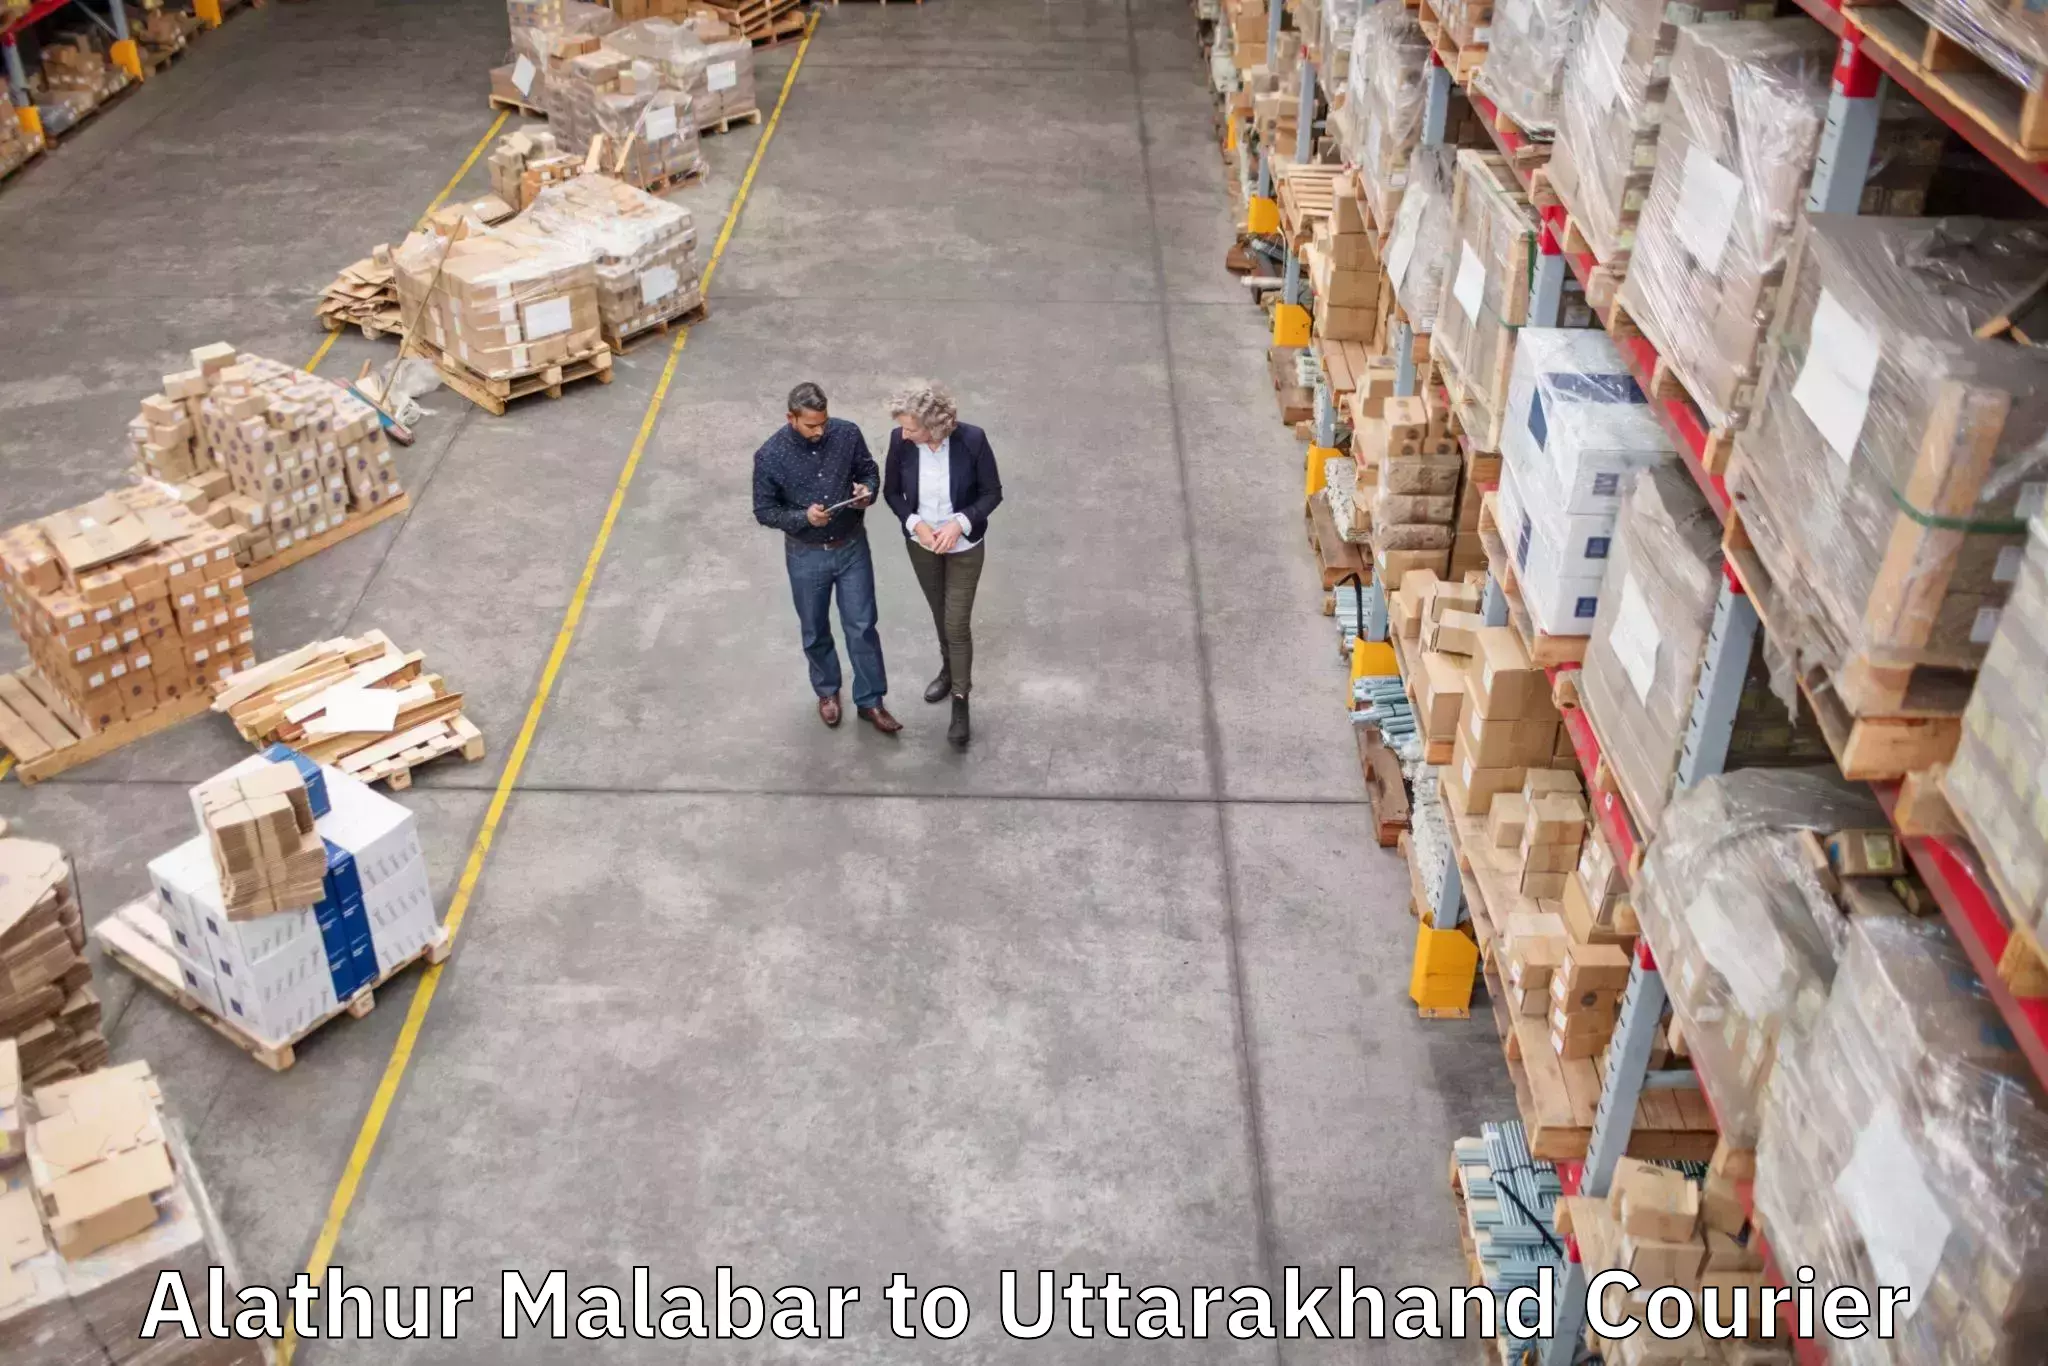 Digital baggage courier Alathur Malabar to Nainital